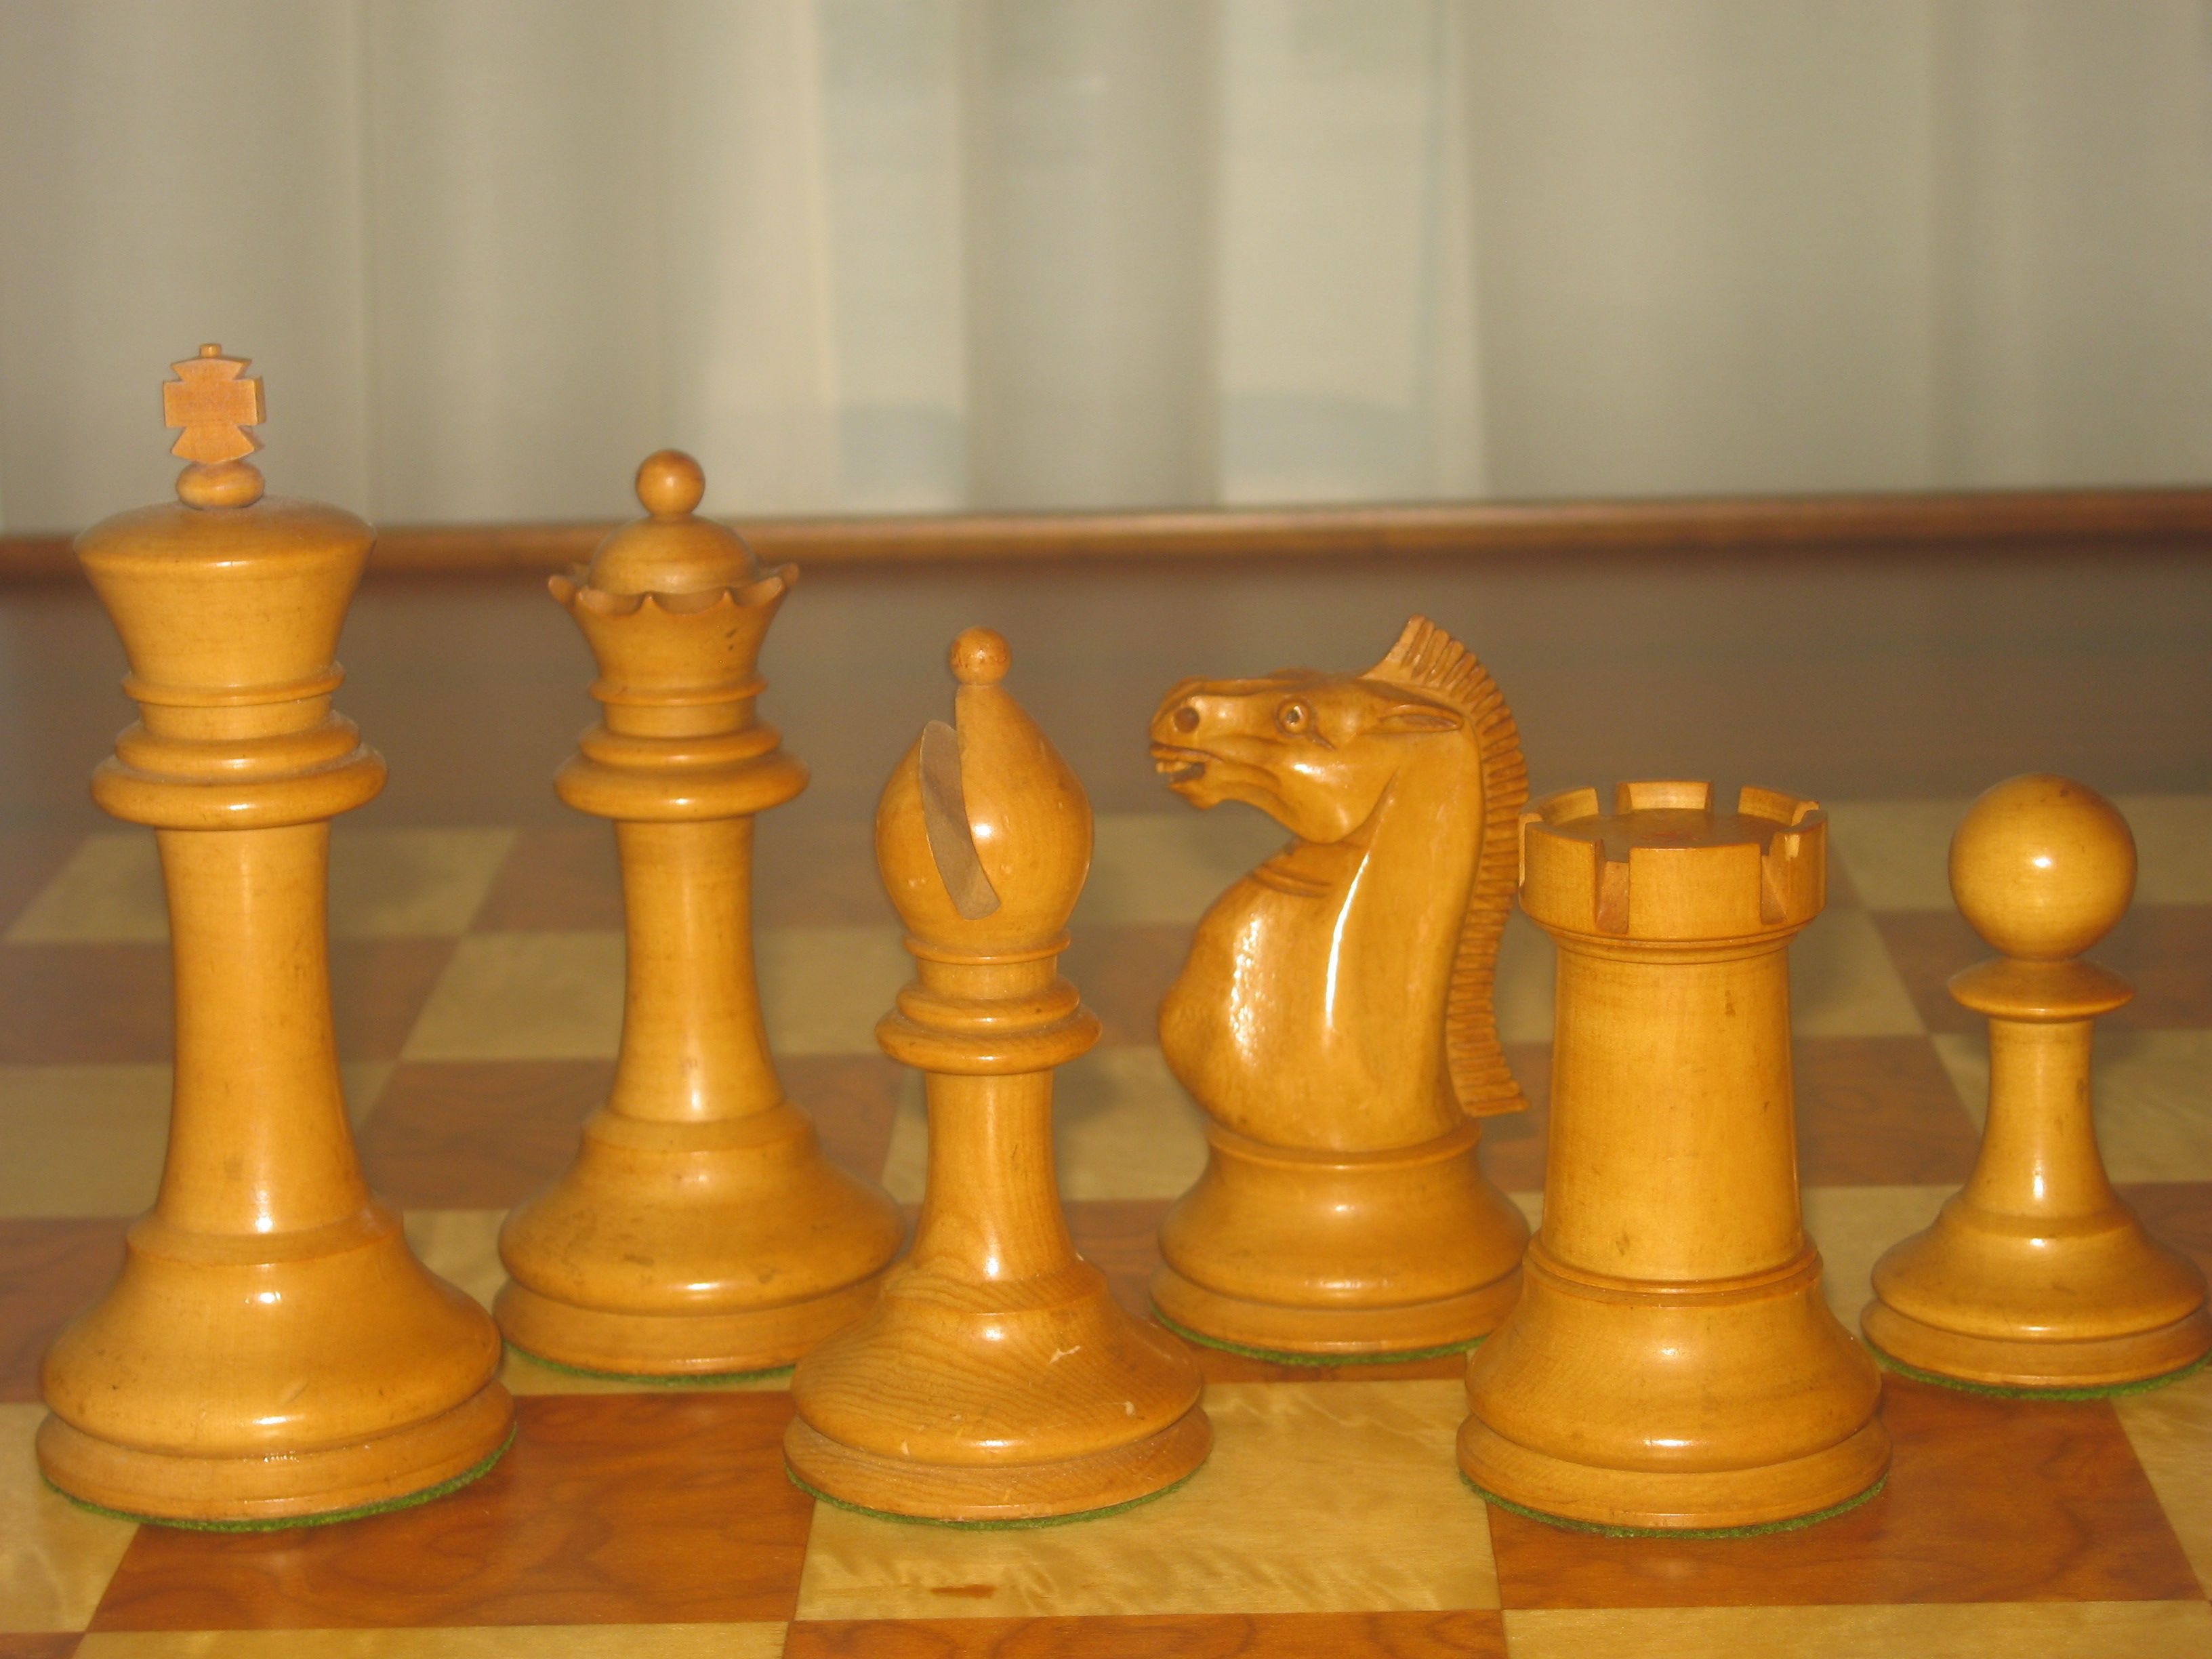 SAGA  3.75 Chess Set - Design Chess